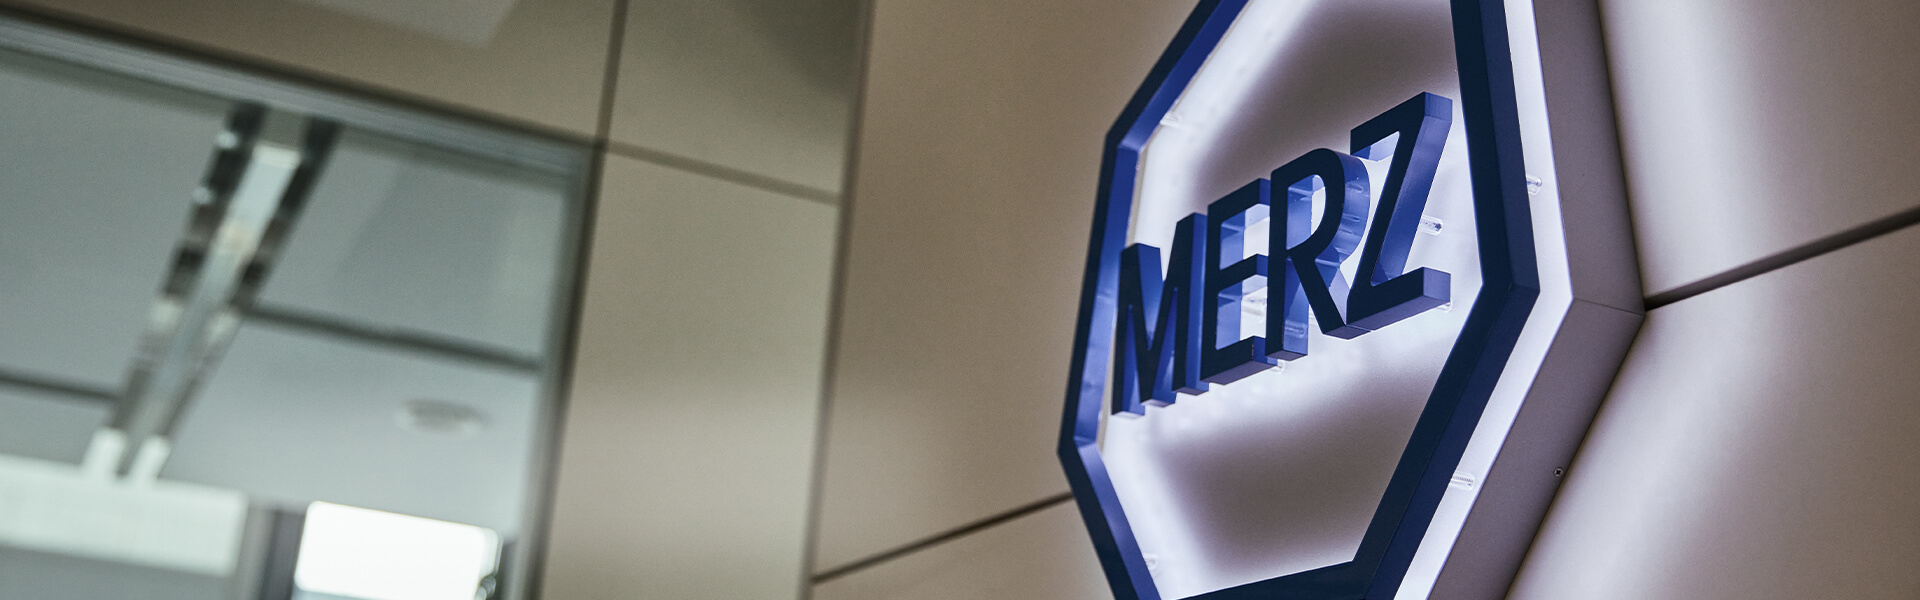 Merz – Eine erfolgreiche Unternehmensgeschichte